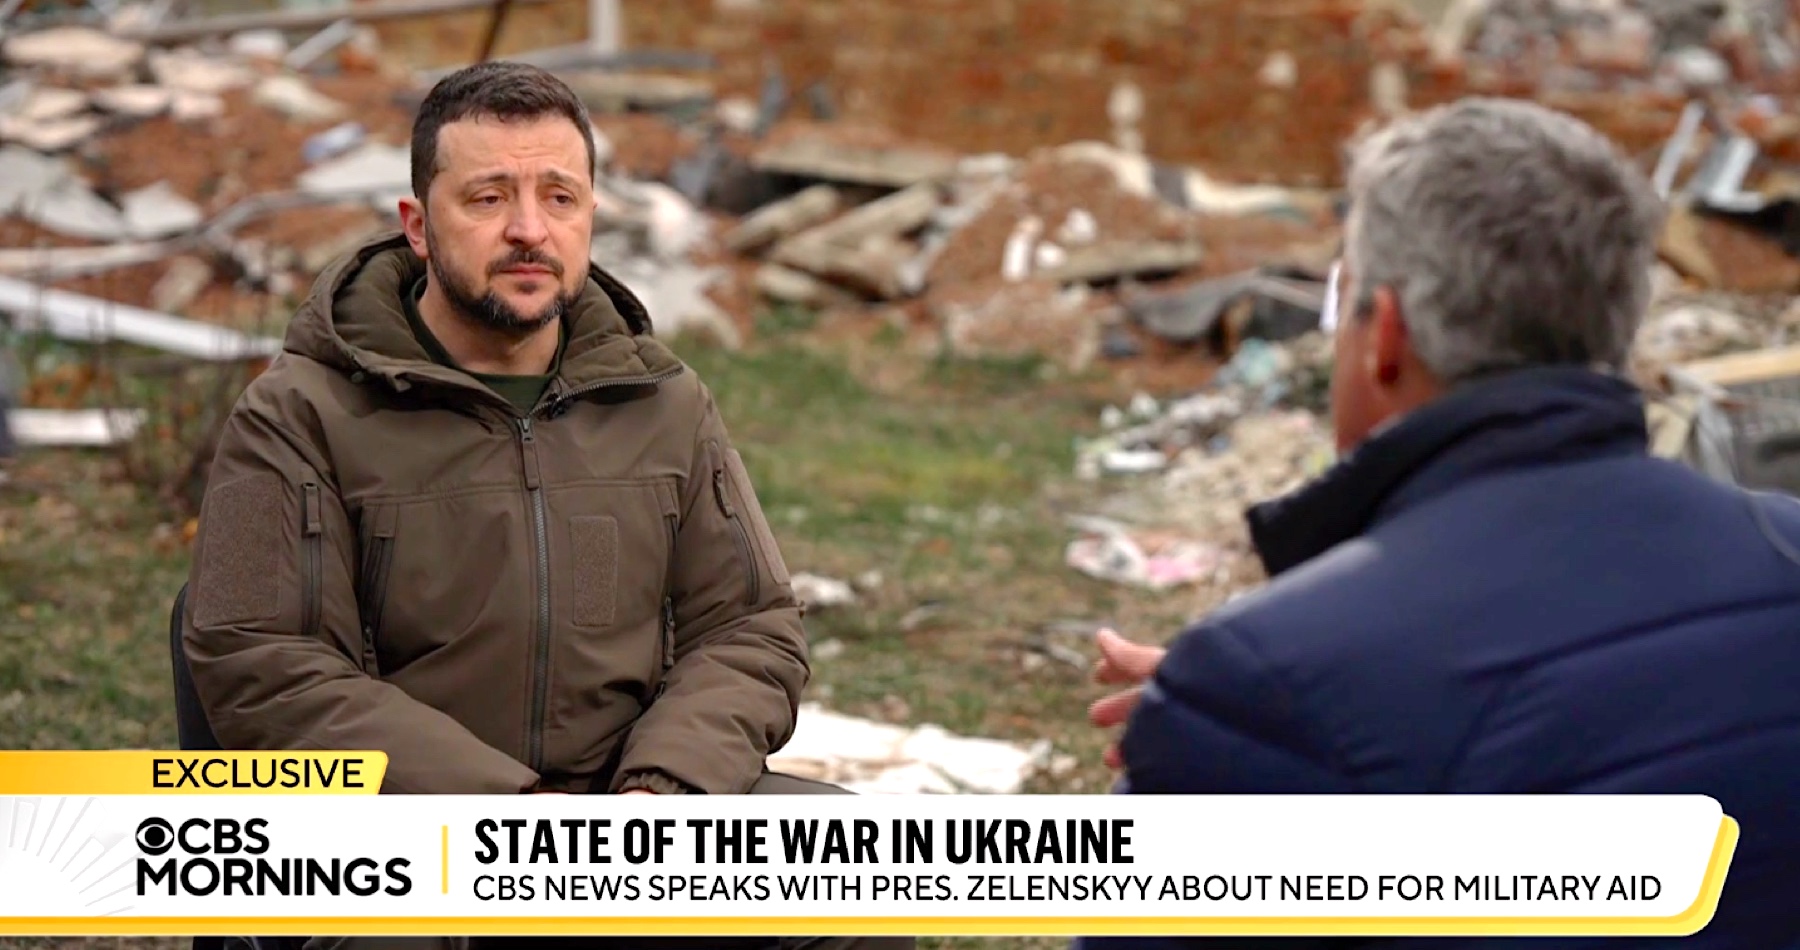 VIDEO: Zelenskyj vůbec poprvé připustil porážku Ukrajiny ve válce. Ukrajinský prezident v rozhovoru pro CBS vedl “divné řeči” o tom, že lidé jsou důležitější než navrácení ztracených území. Navíc se vyhnul odpovědi na přímou otázku, jestli ještě pořád věří ve vítězství Ukrajiny a navrácení celého území. Prý to nezávisí jen na bojových výsledcích